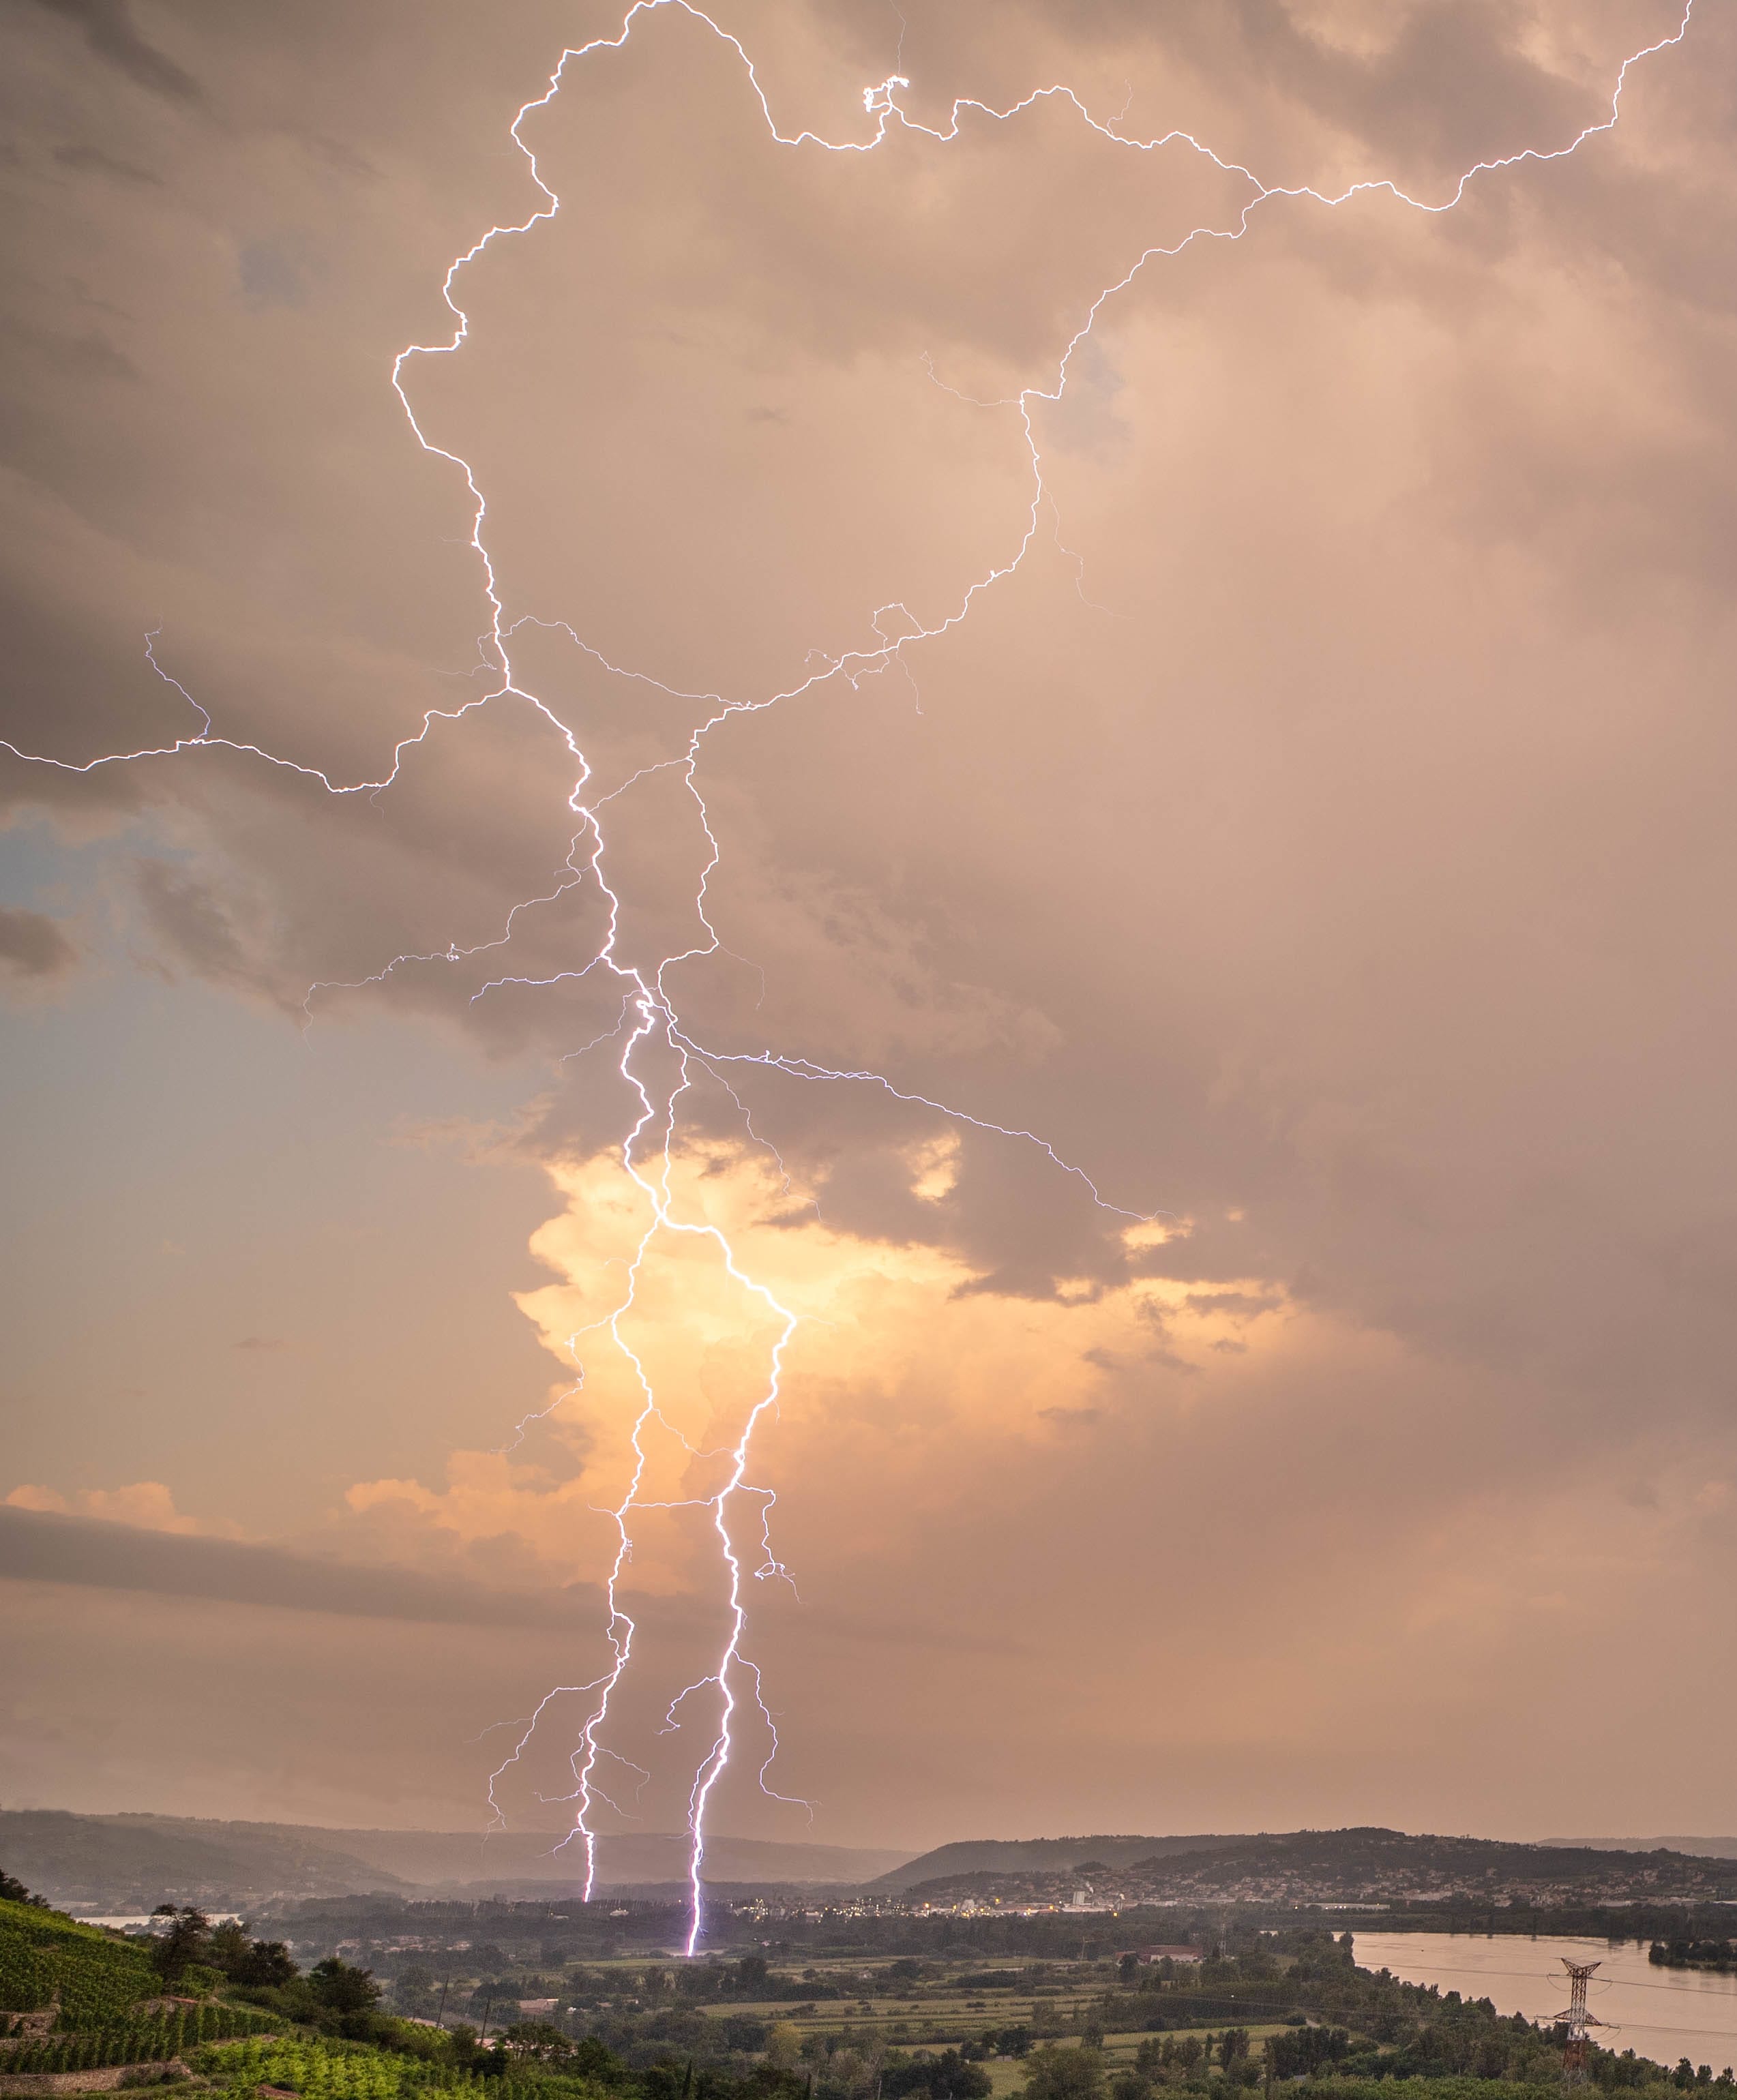 Foudre zoom, le soir du 15.08.21 positionné sur les coteaux de la vallée du Rhône à hauteur de Chavanay (42) les orages explosent sur le Rhôdanien donnant pas mal d'impacts visibles et une pile électrique sur l'Isère. - 15/08/2021 20:45 - Fabio Aqualys